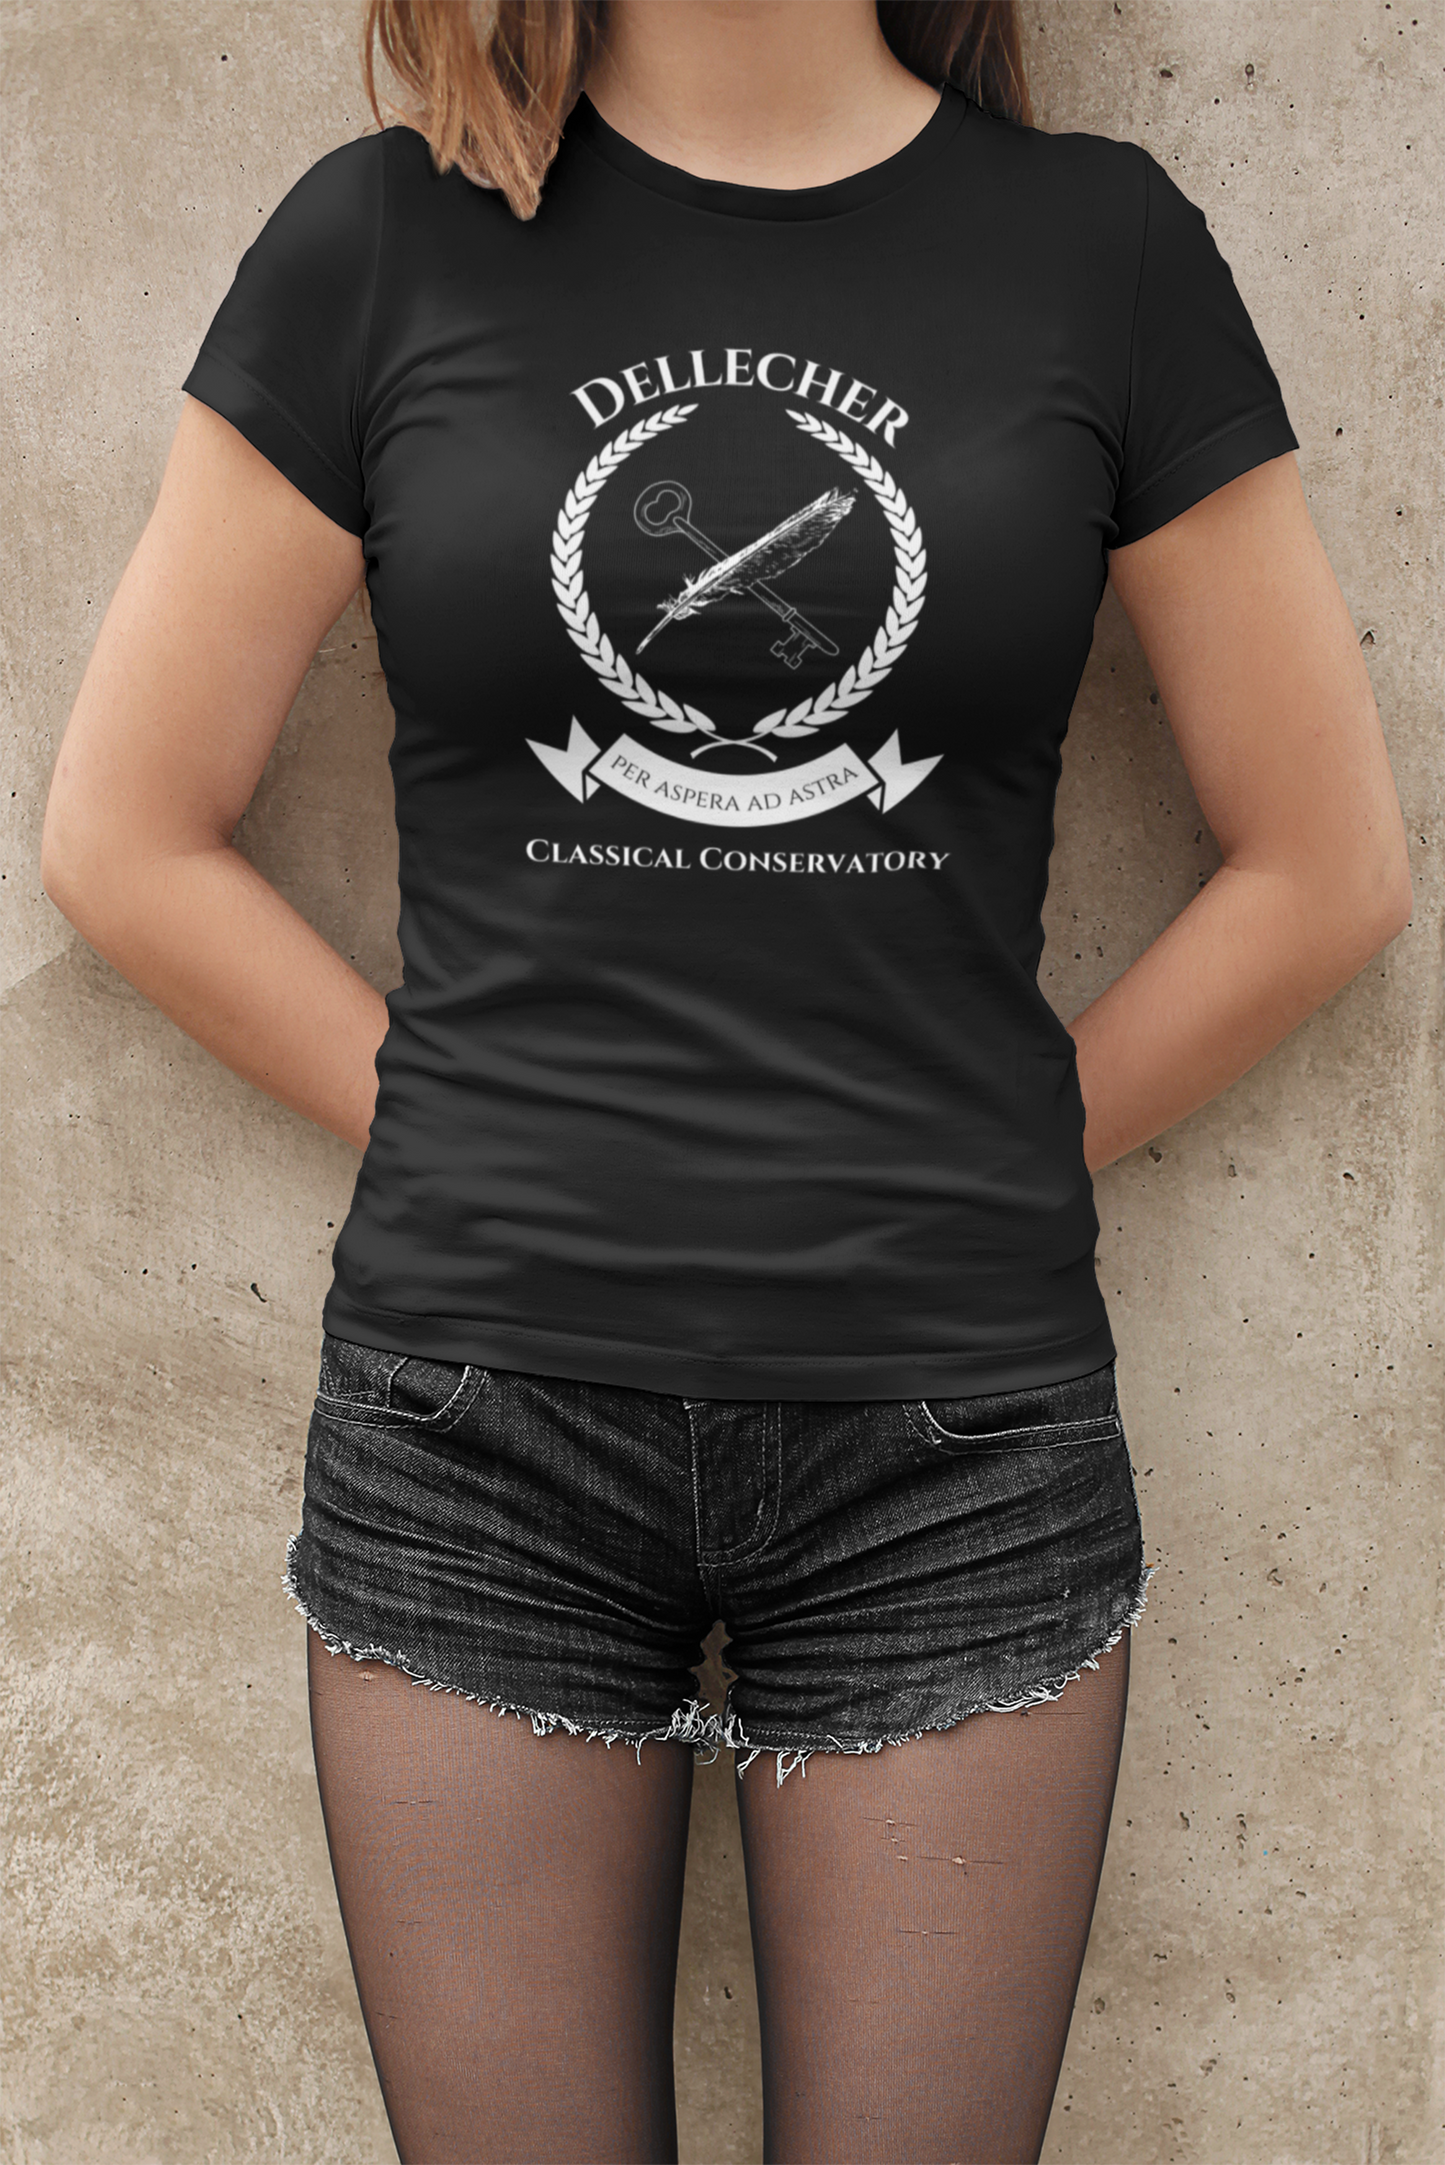 Dellecher Classical Conservatory Women's T-Shirt